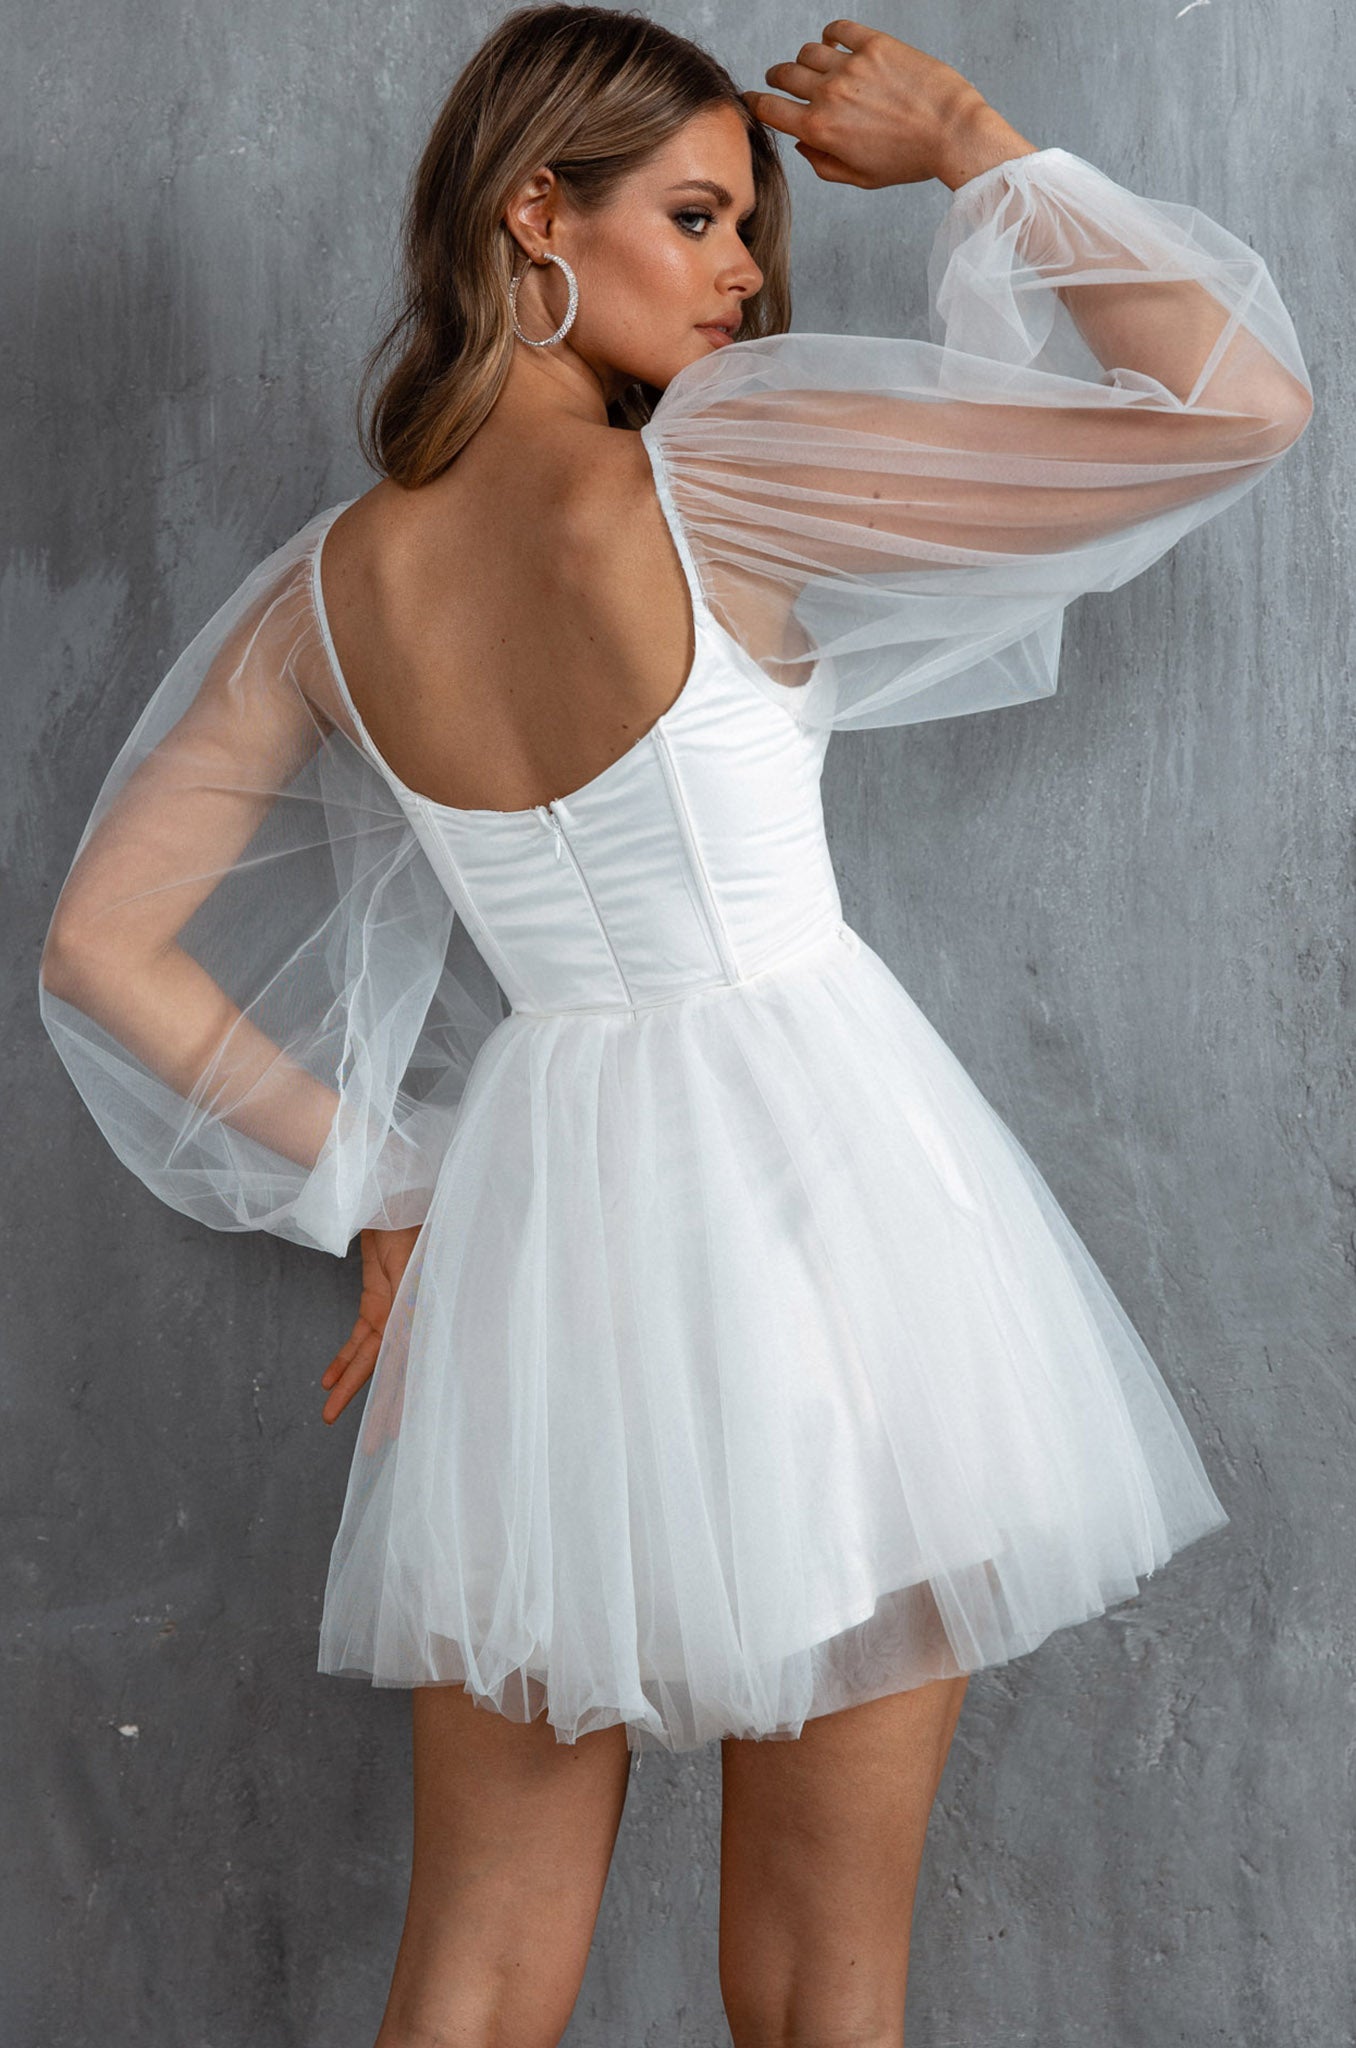 white sheer dress